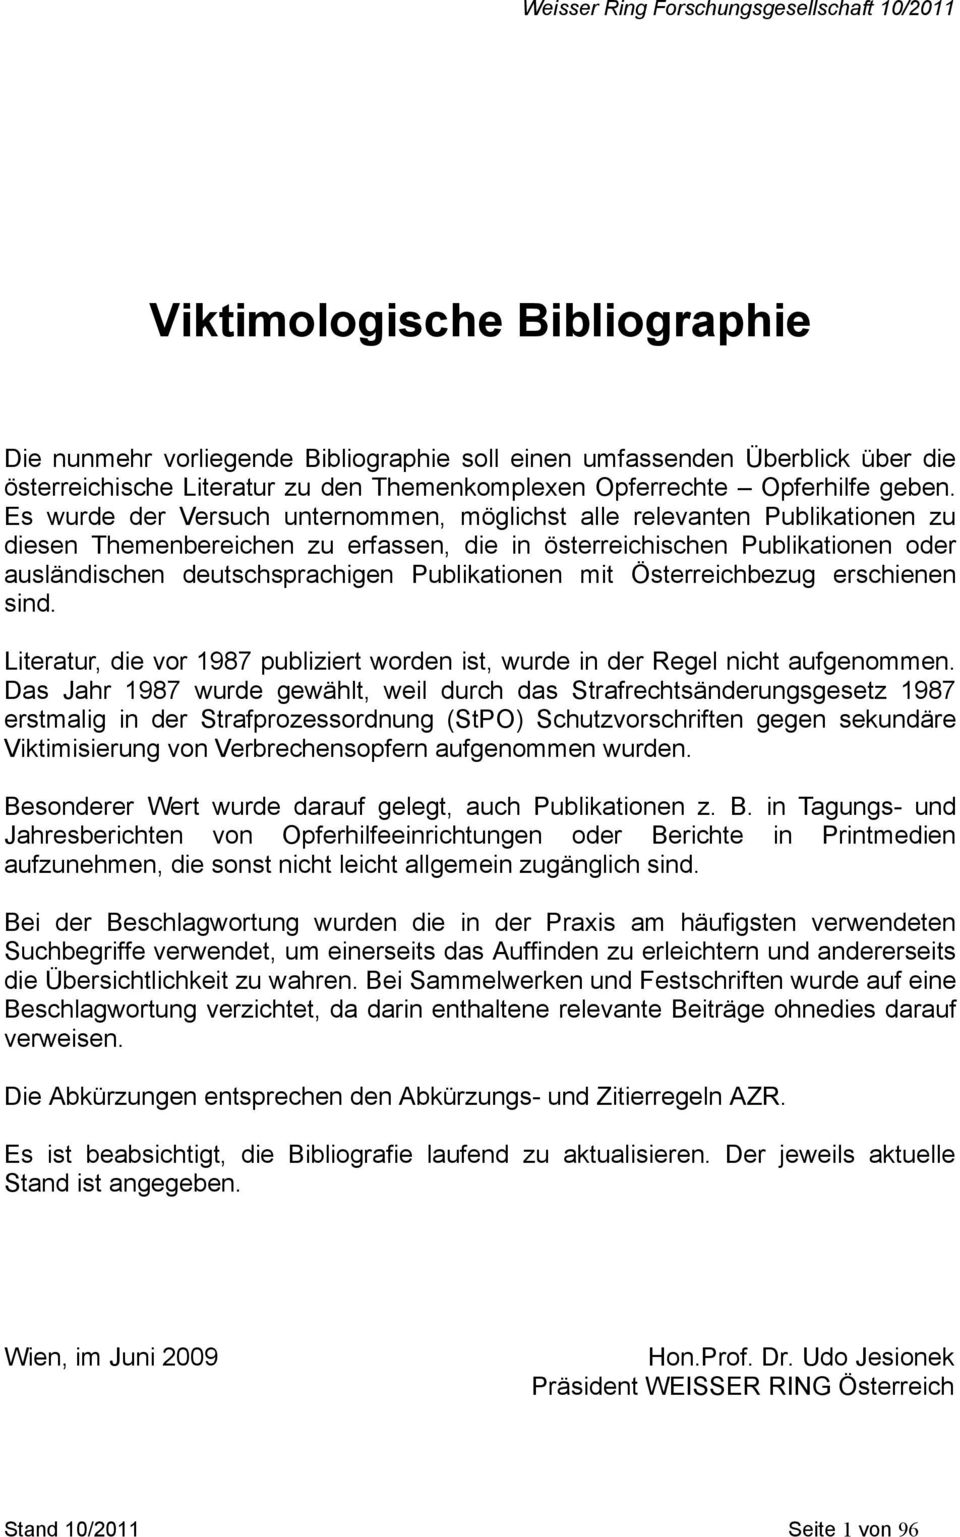 Publikationen mit Österreichbezug erschienen sind. Literatur, die vor 1987 publiziert worden ist, wurde in der Regel nicht aufgenommen.